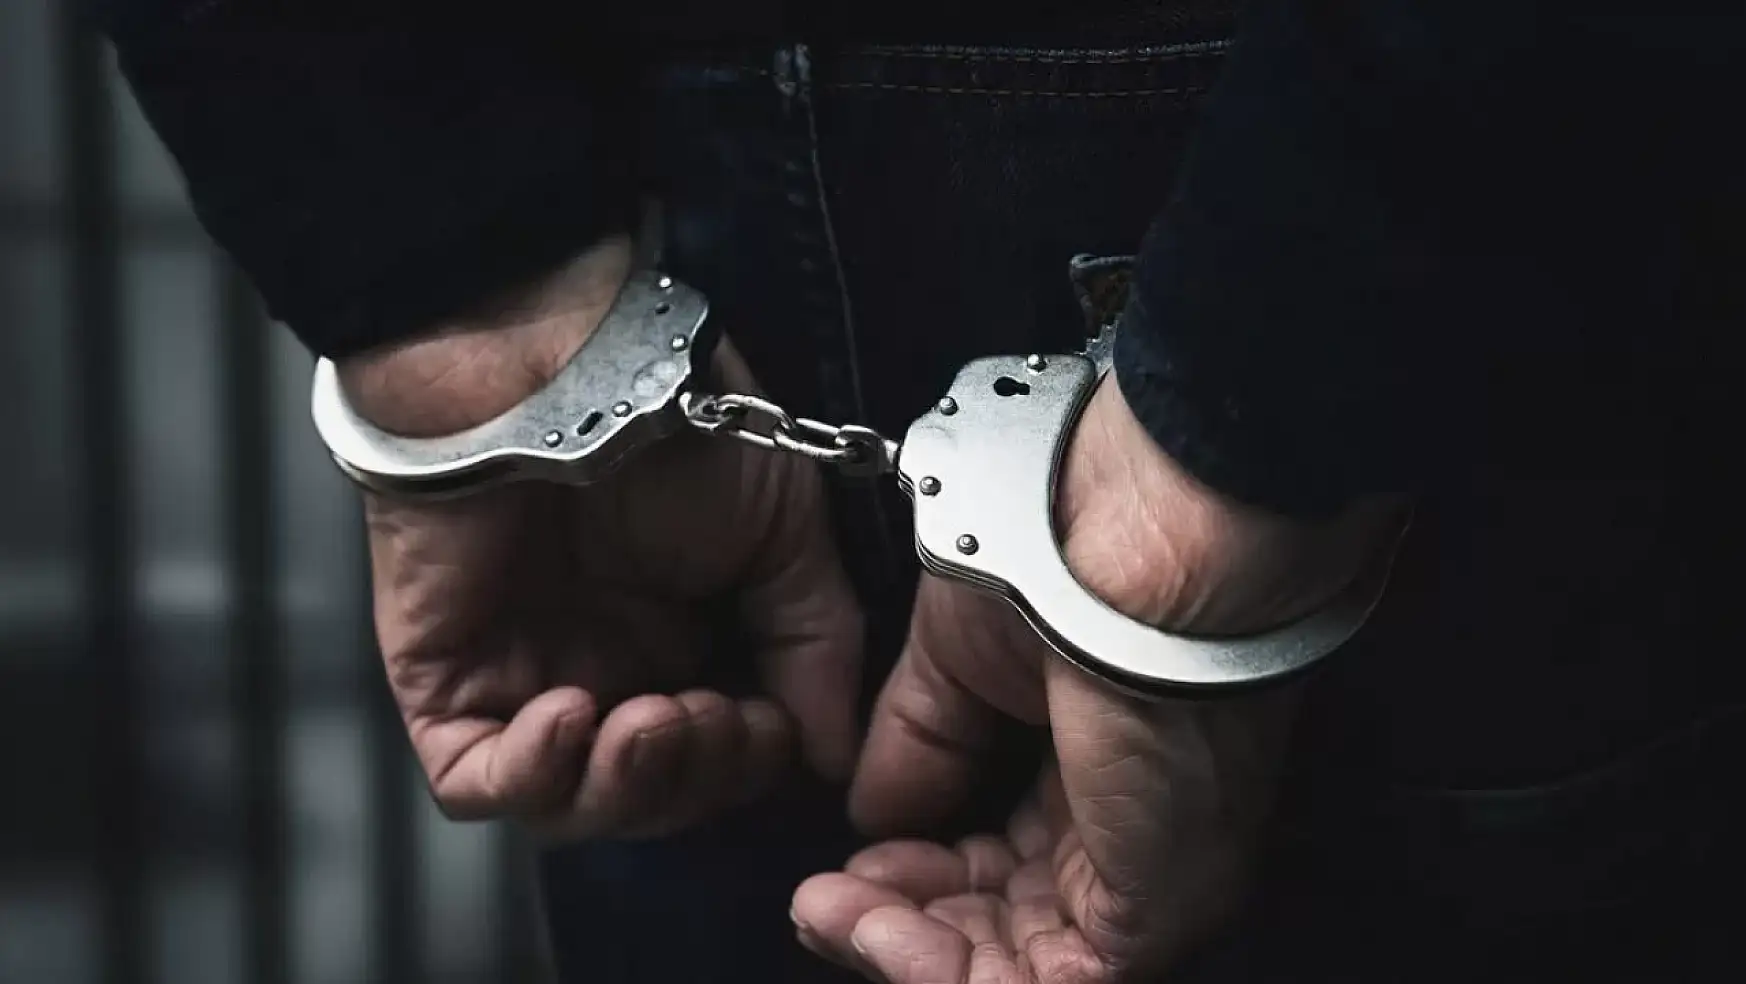 Cihanbeyli'de motosiklet hırsızlığına karışan zanlı tutuklandı